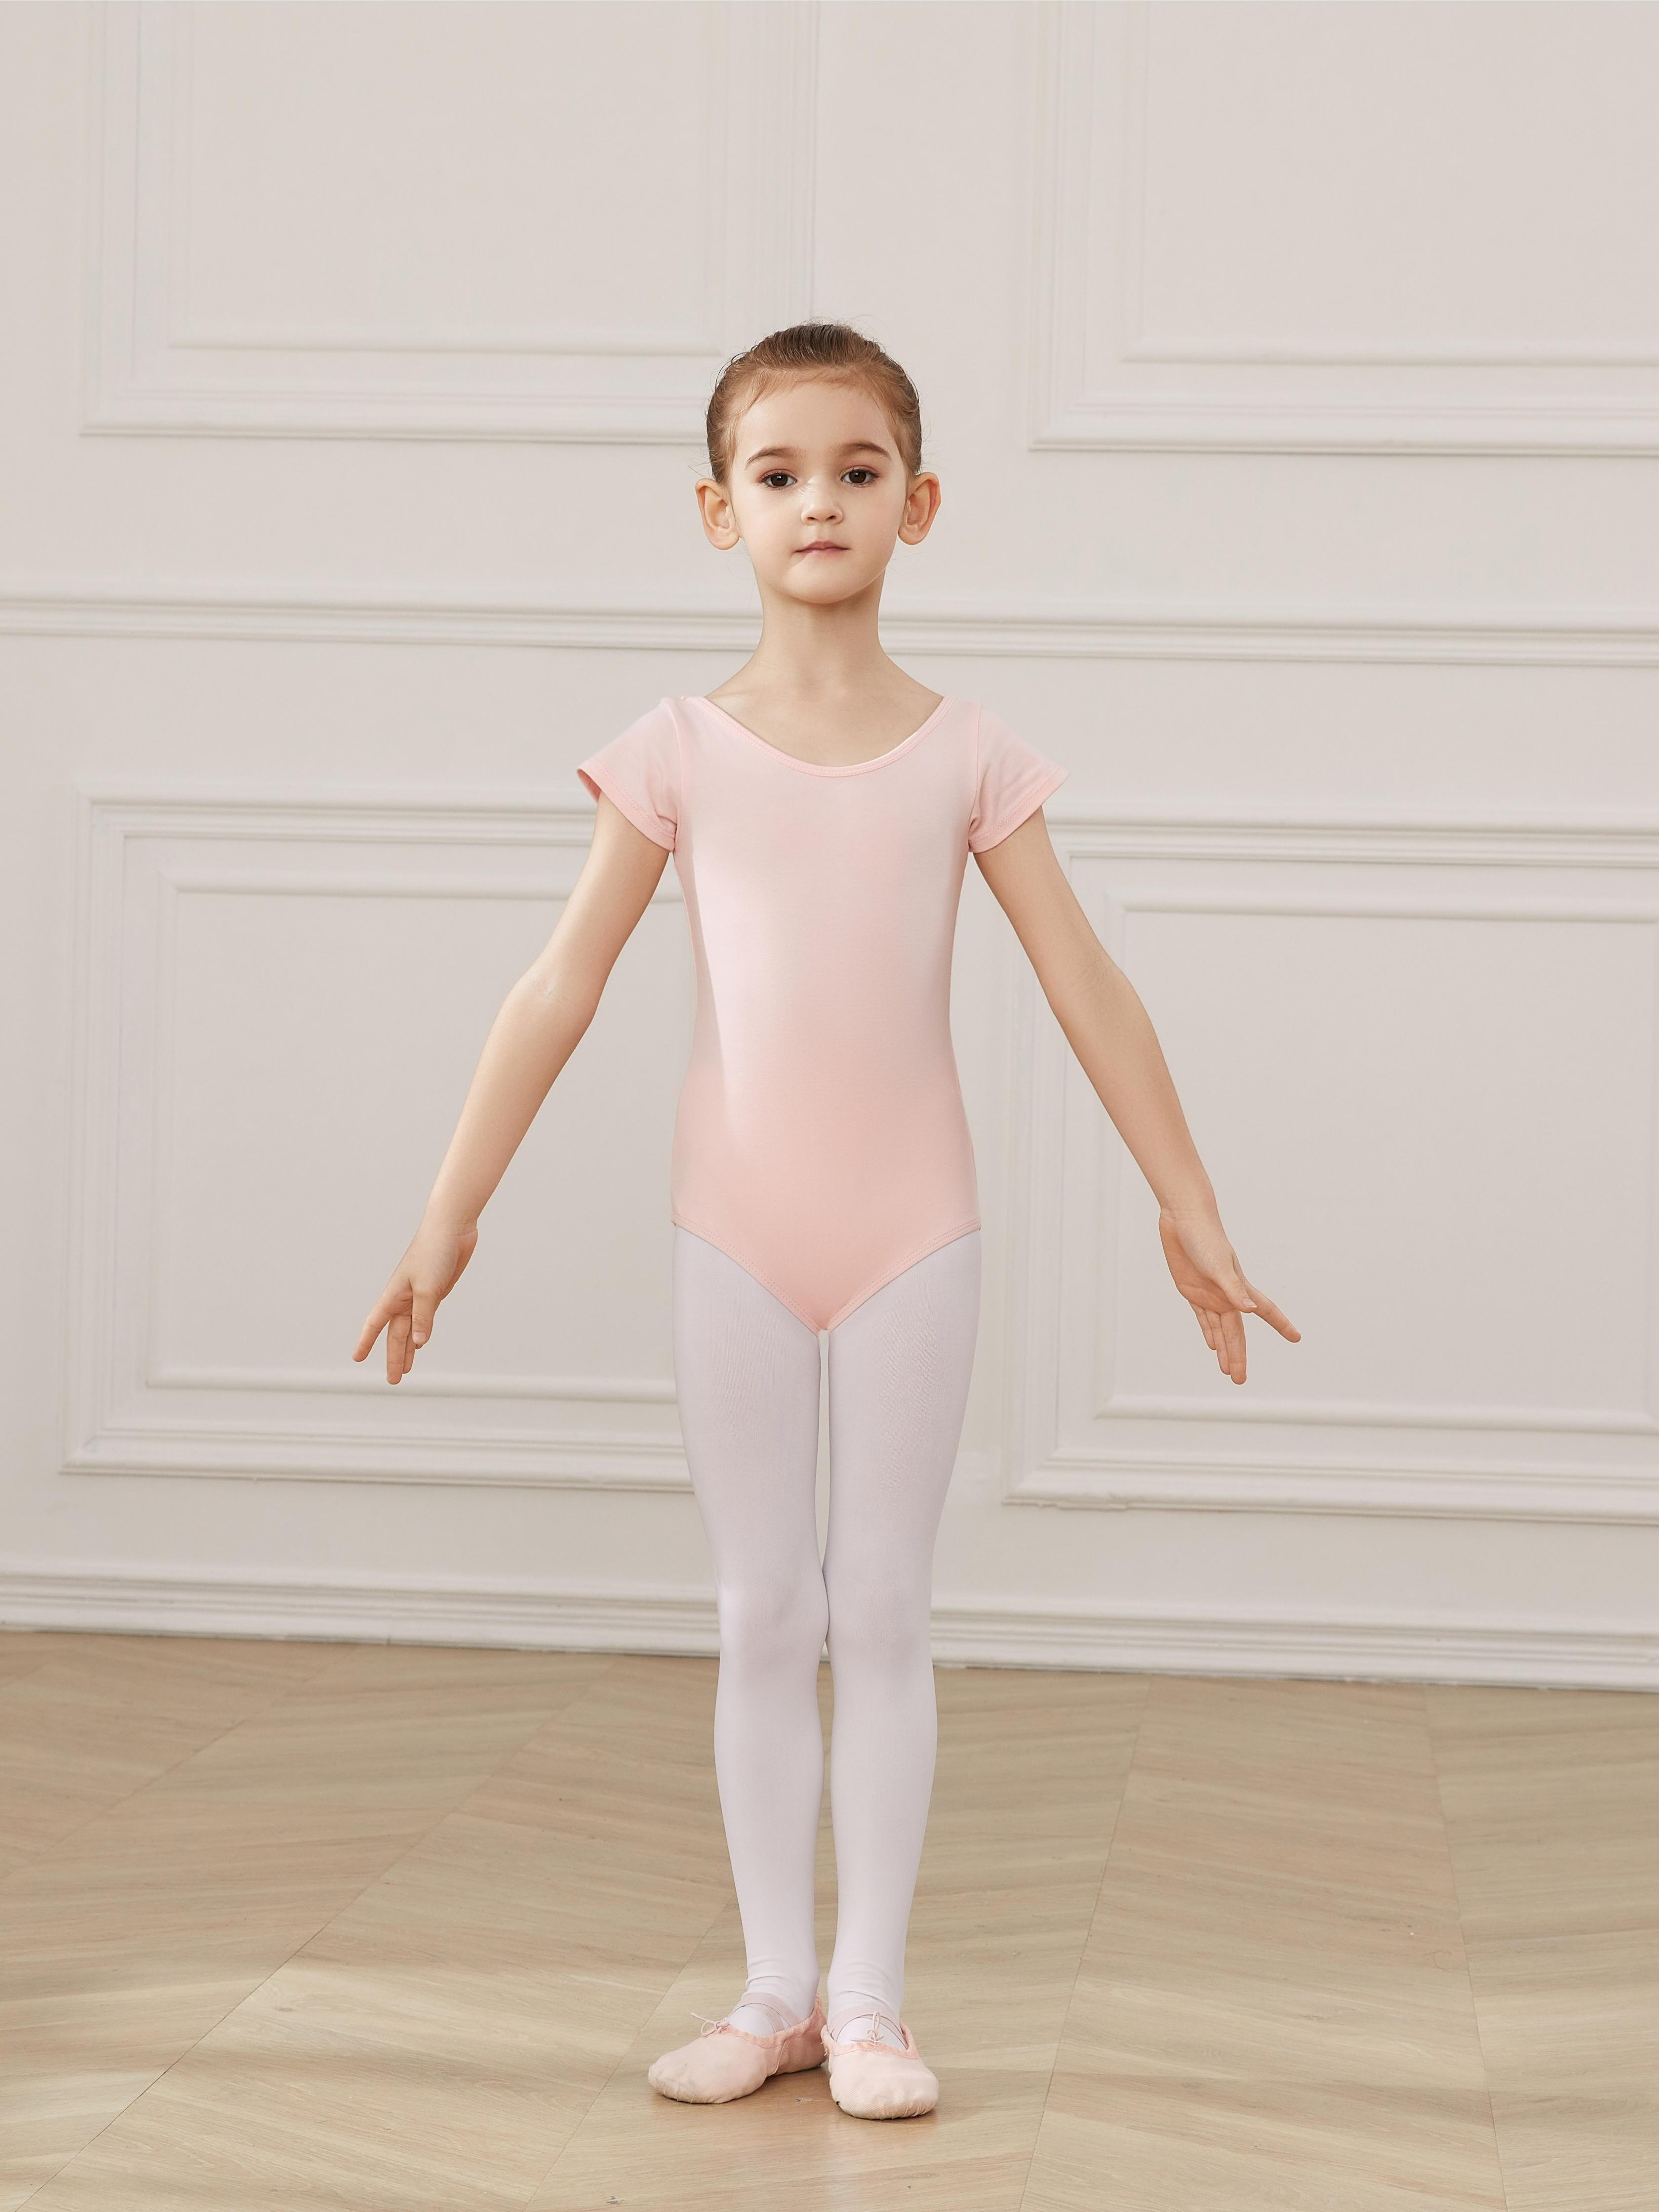 Children's Gymnastics Ballet Underwear Girls Ballet Performance Costume  Winter Thermal Underwear